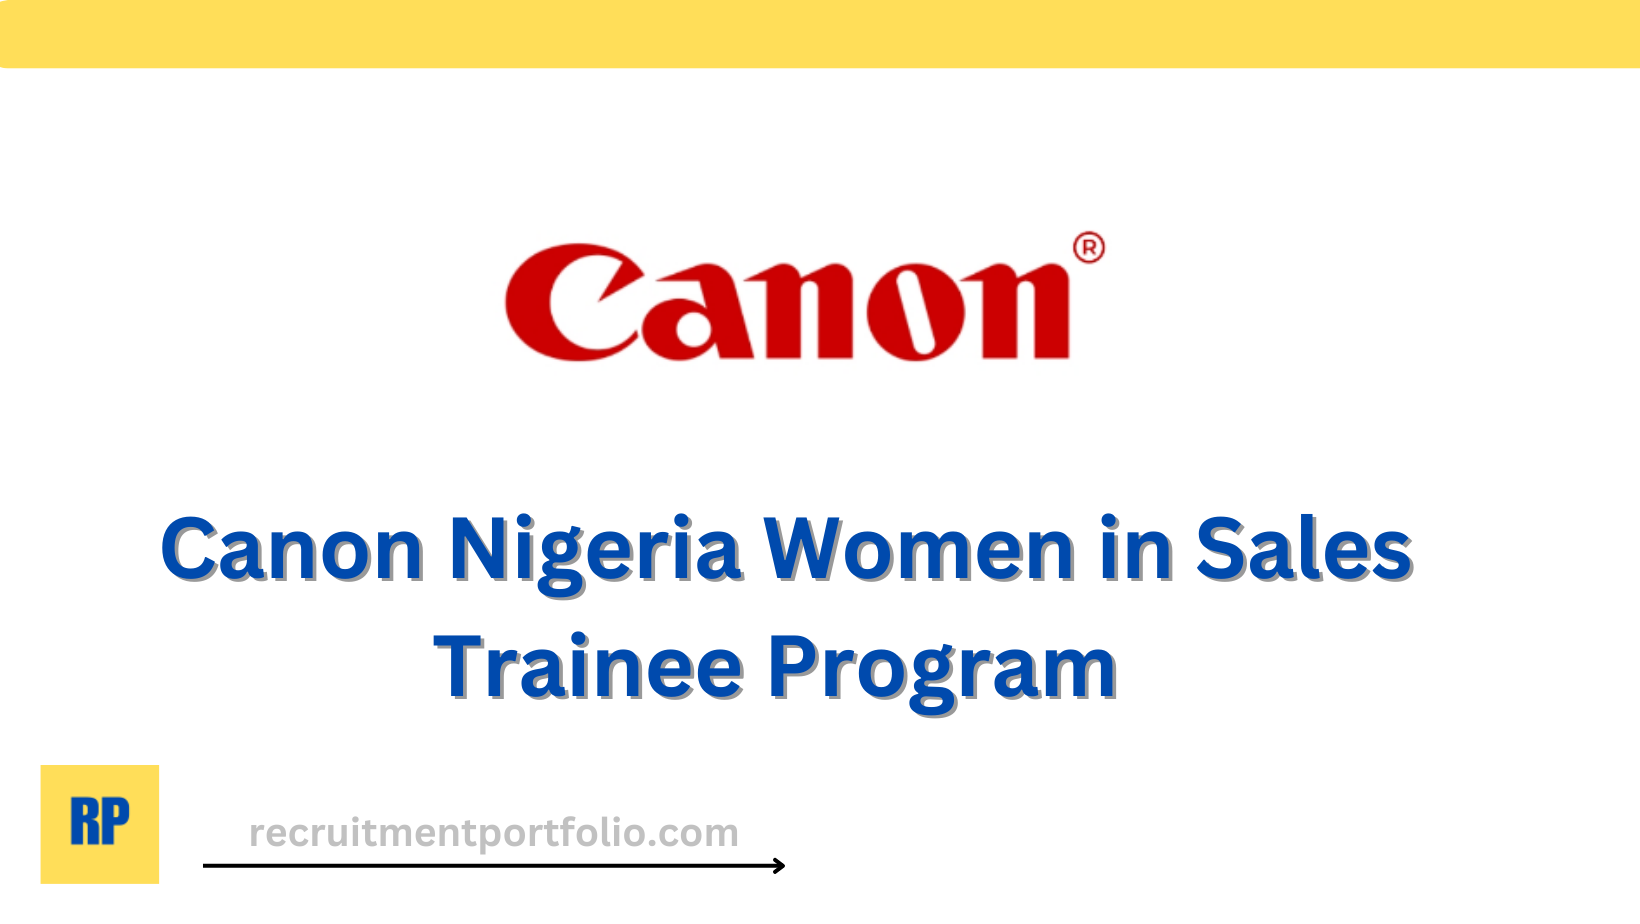 Canon Nigeria Women